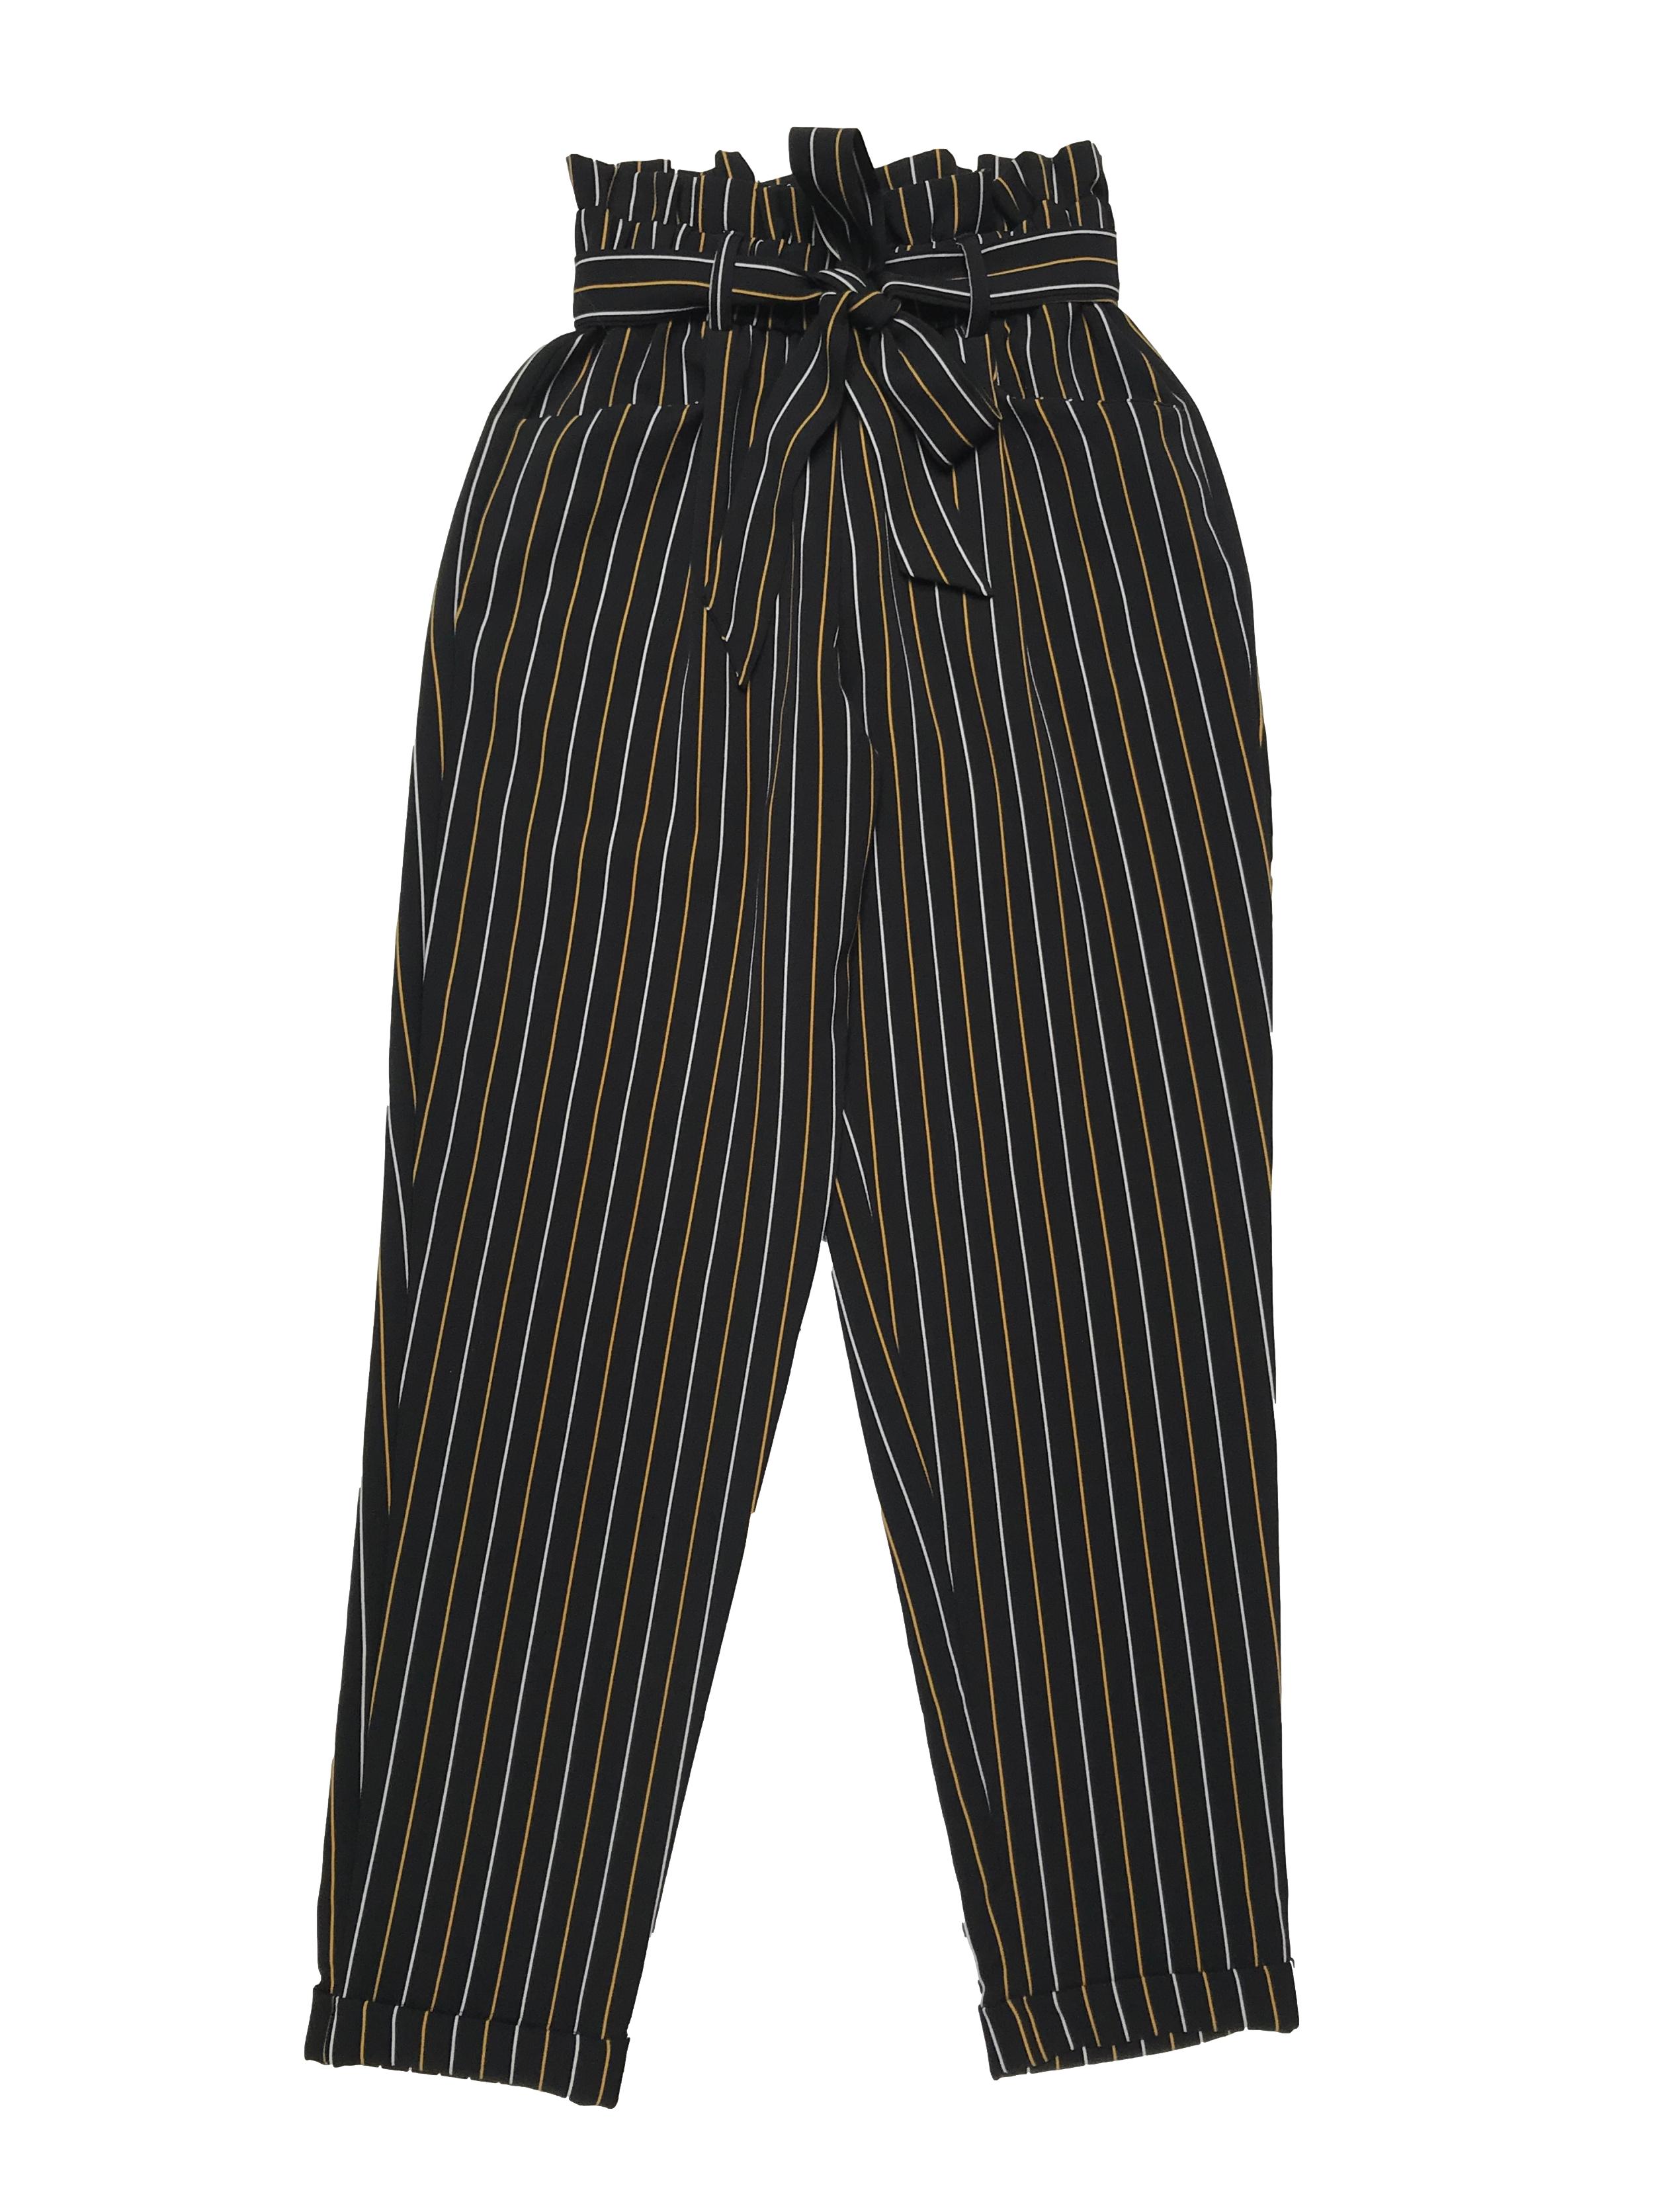 Pantalón paper bag Moda&cia negro con líneas blancas y amarillas, pretina elástica con cinto para amarrar, bolsillos laterales y dobladillo en la basta. Cintura 60cm sin estirar Largo 95cm